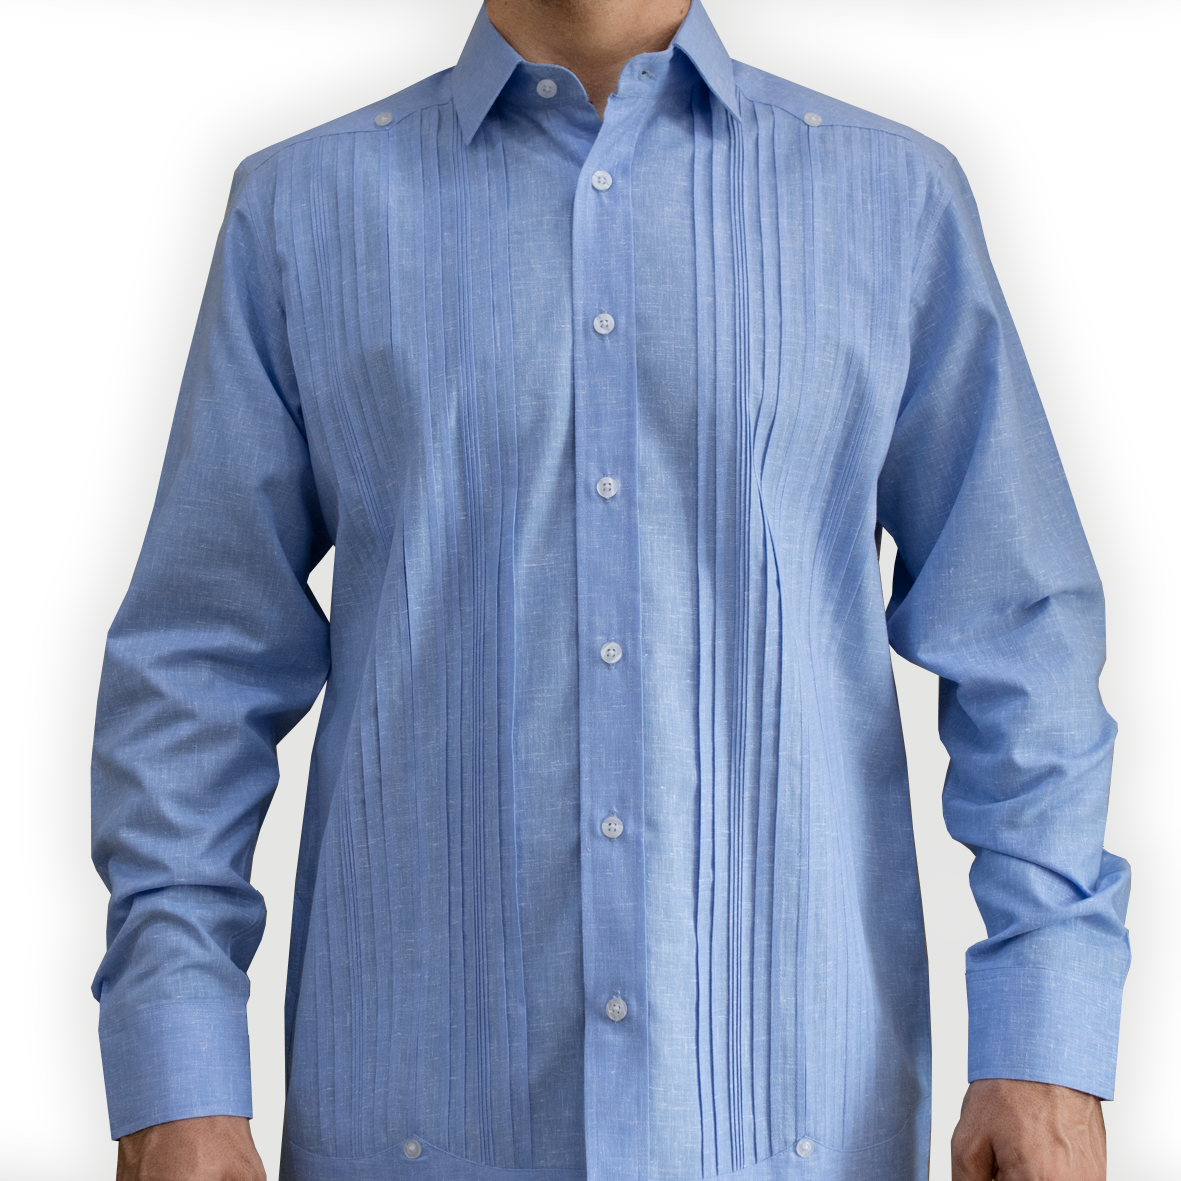 Blue guayabera shirt